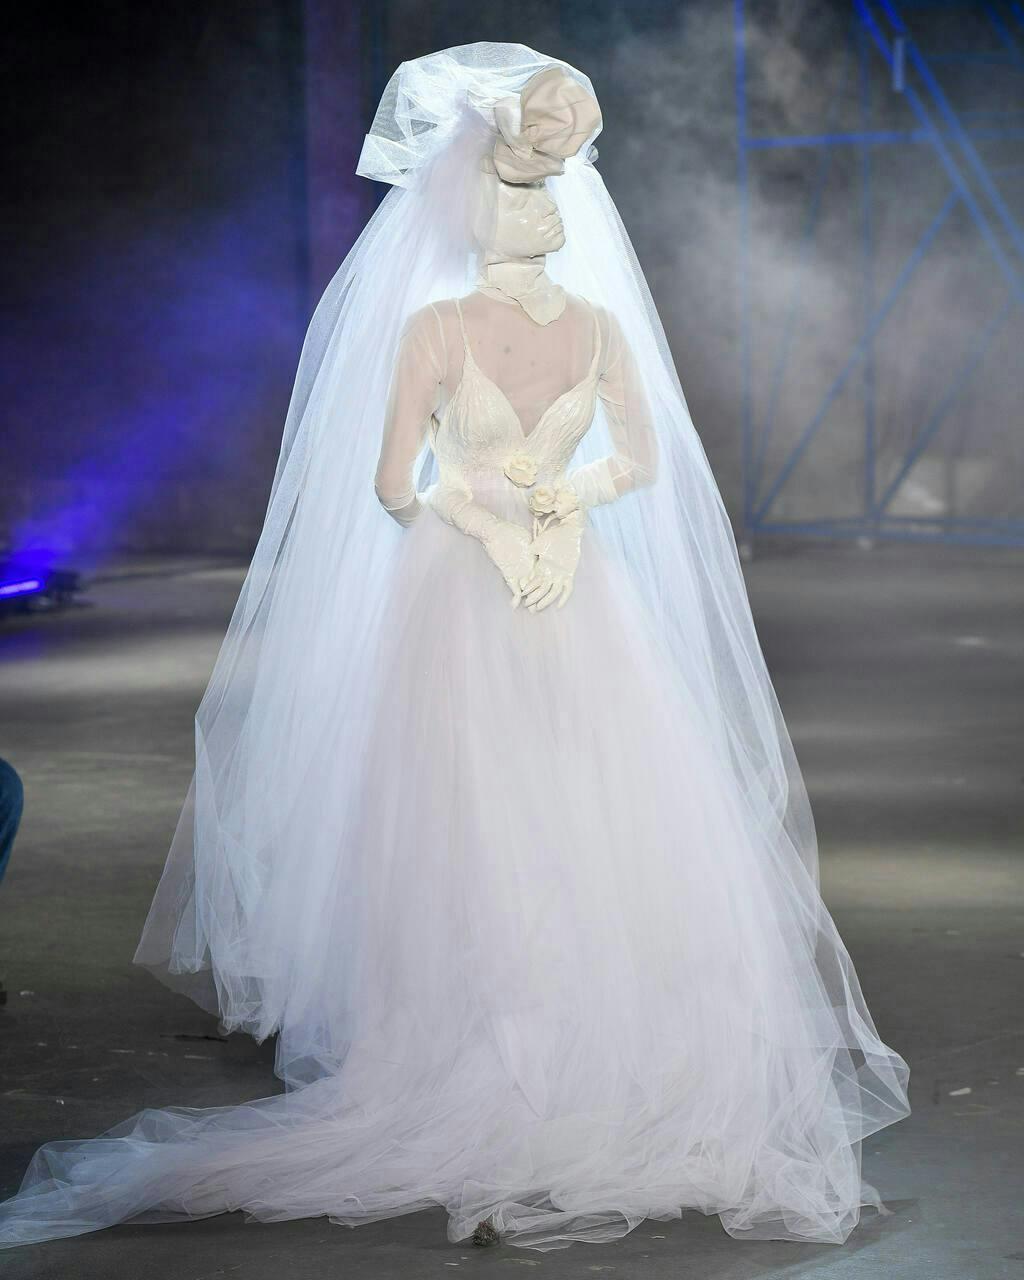 clothing dress fashion formal wear gown wedding wedding gown veil bridal veil person